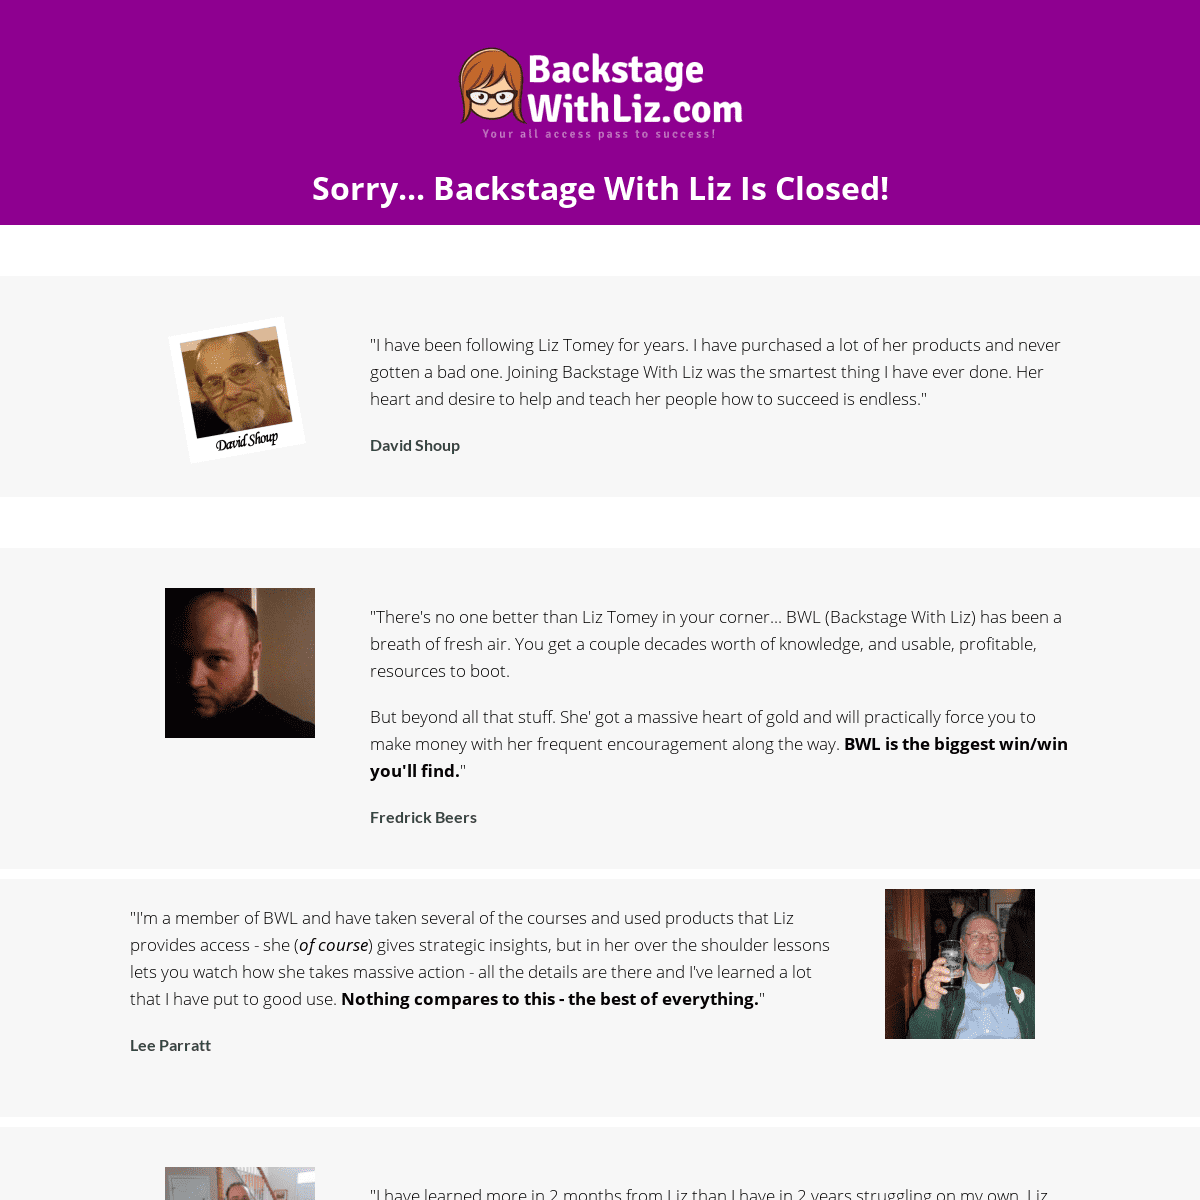 A complete backup of backstagewithliz.com